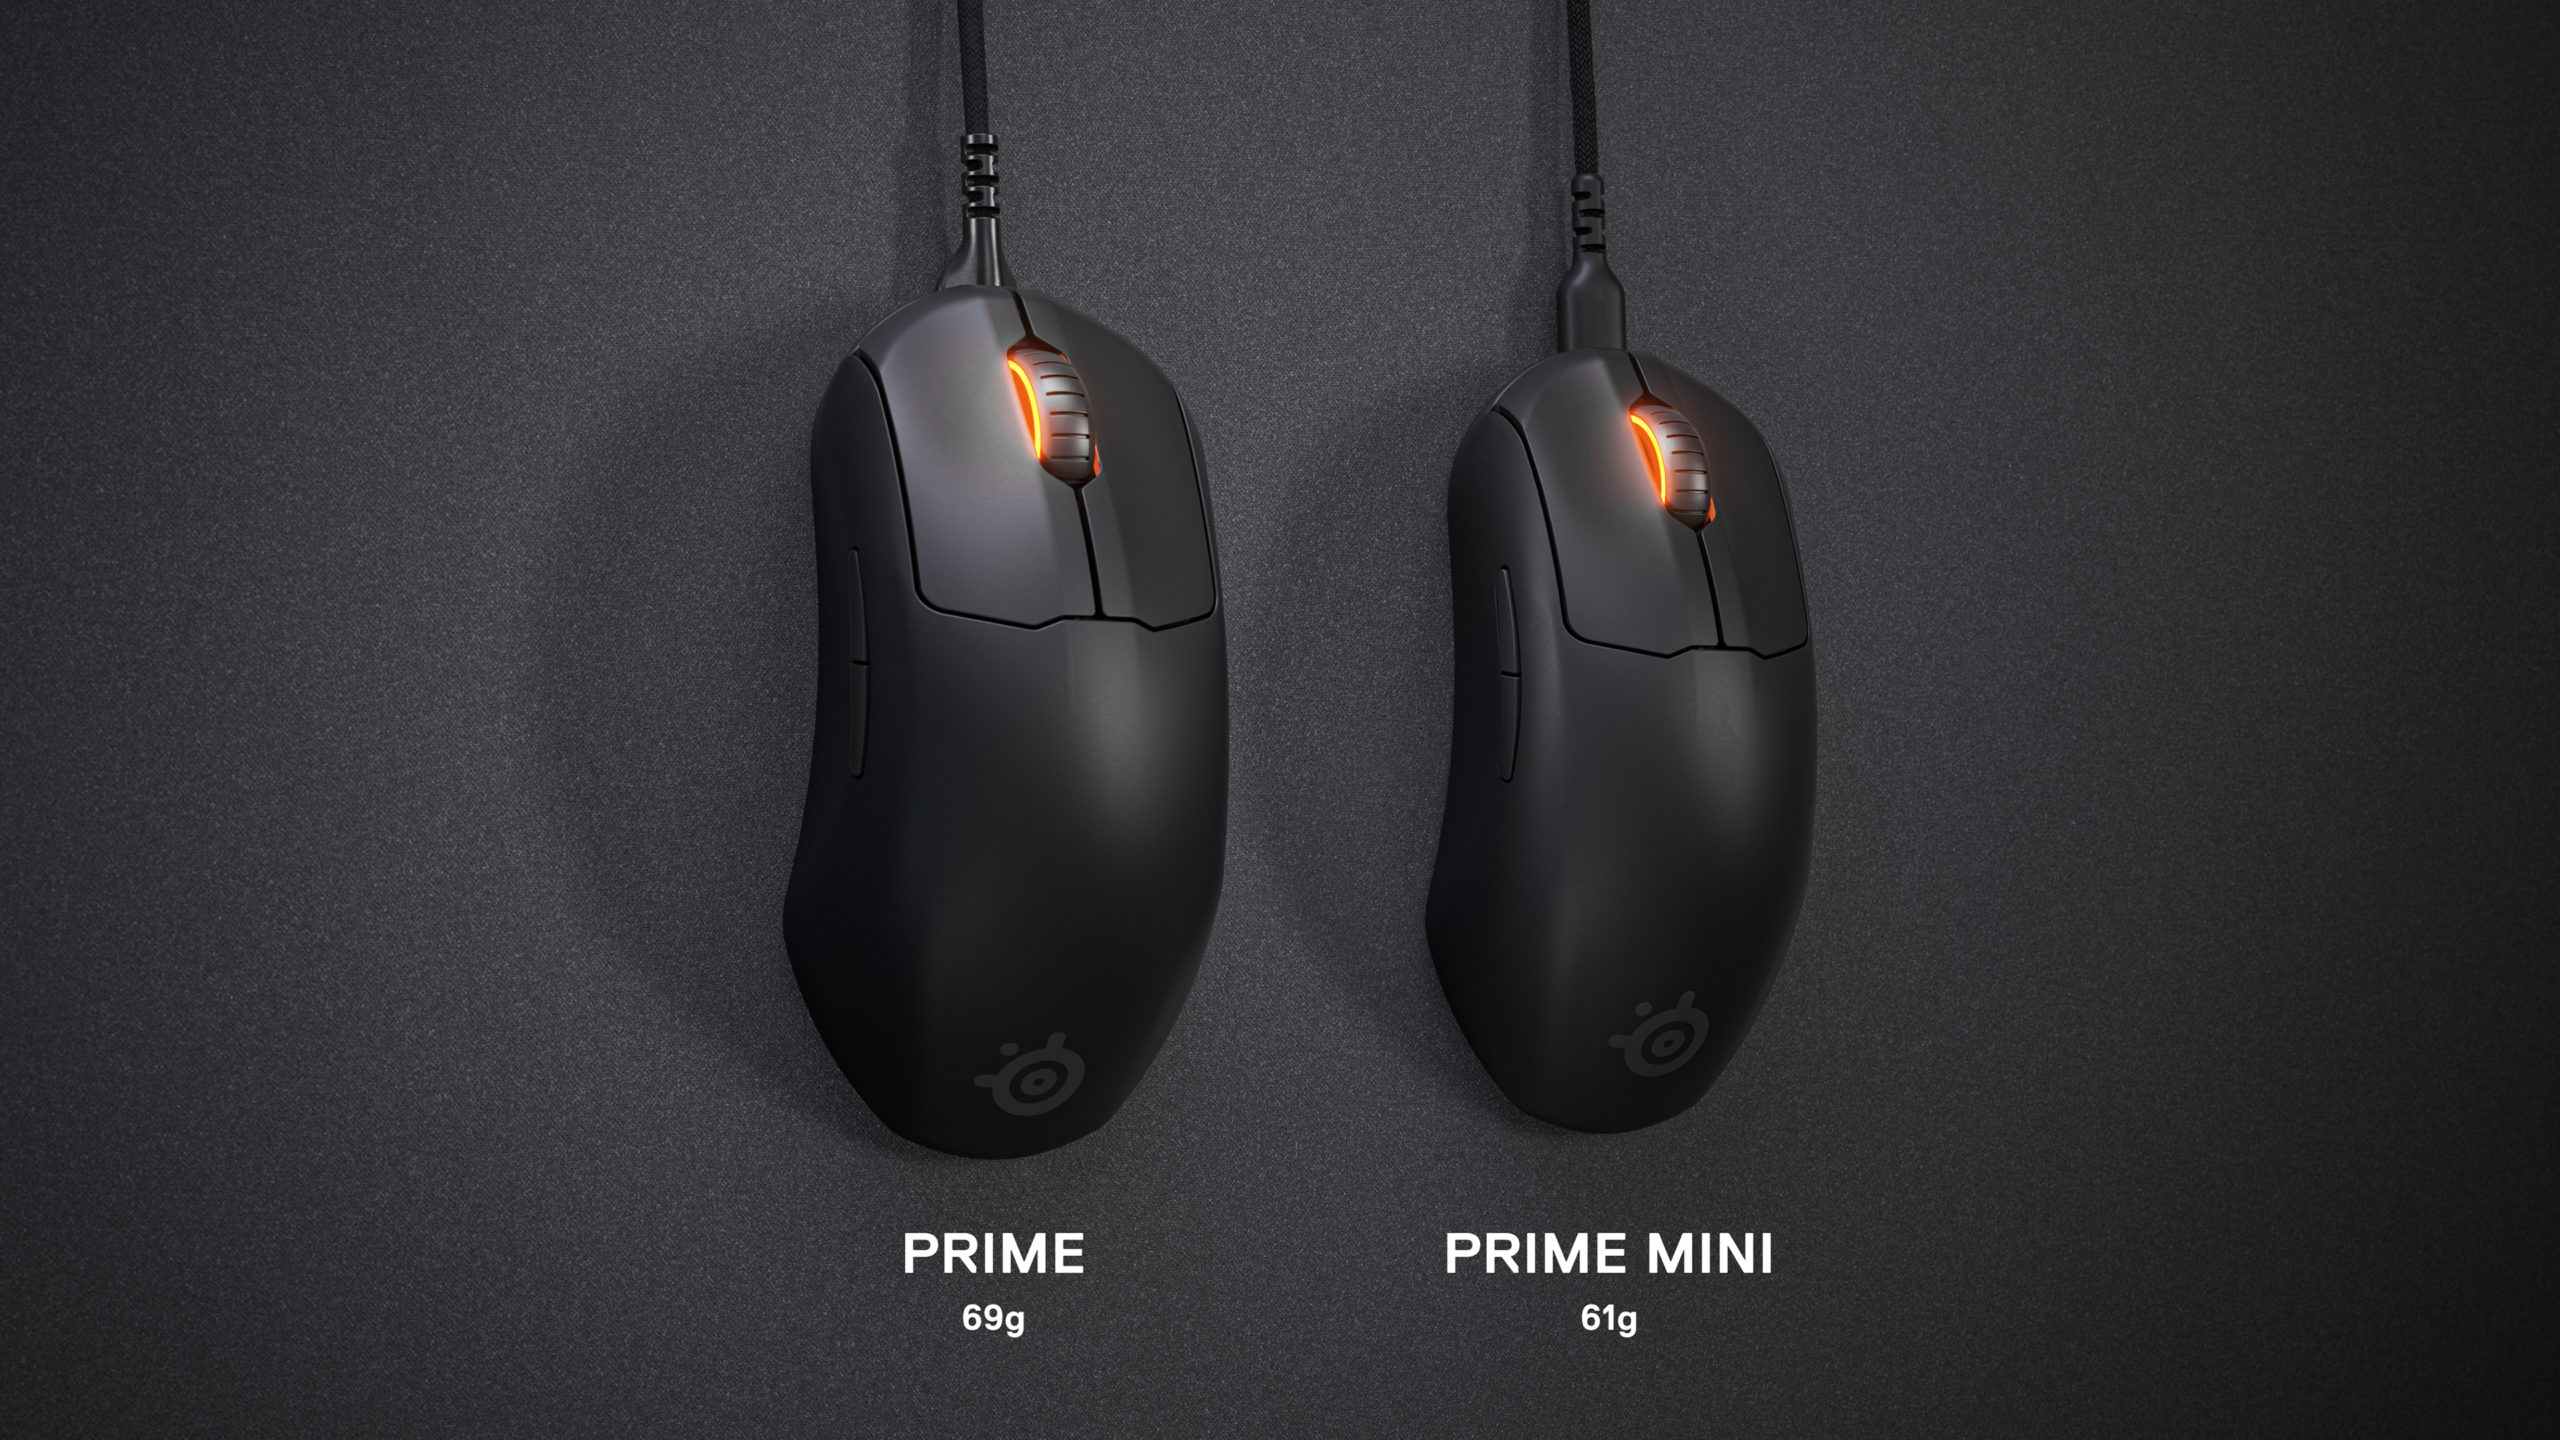 Prime Mini x Prime Comparison